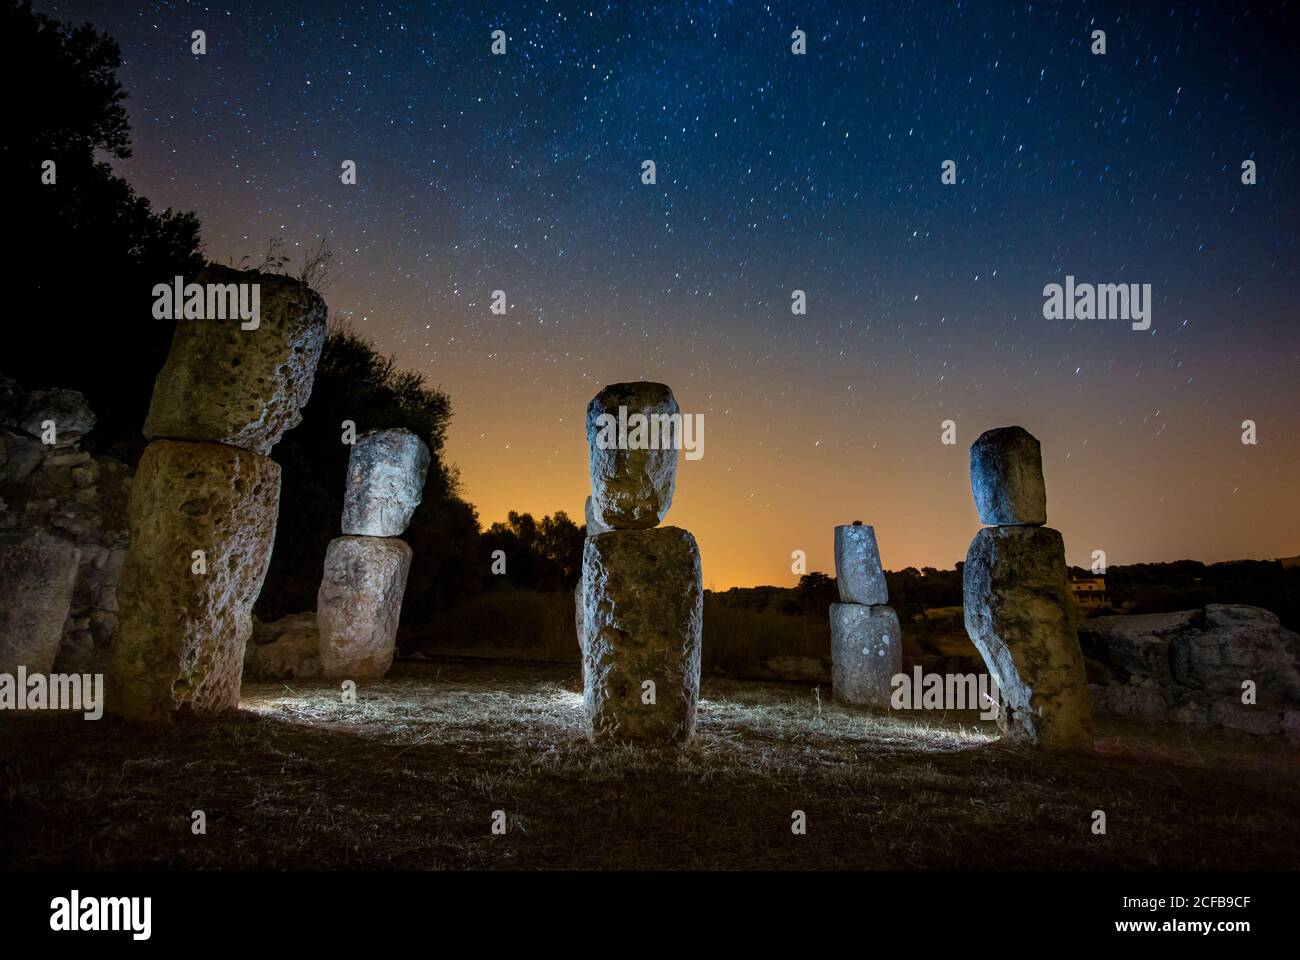 Rock monumenti evidenziati da luci e cielo stupefacente con stelle di notte Foto Stock